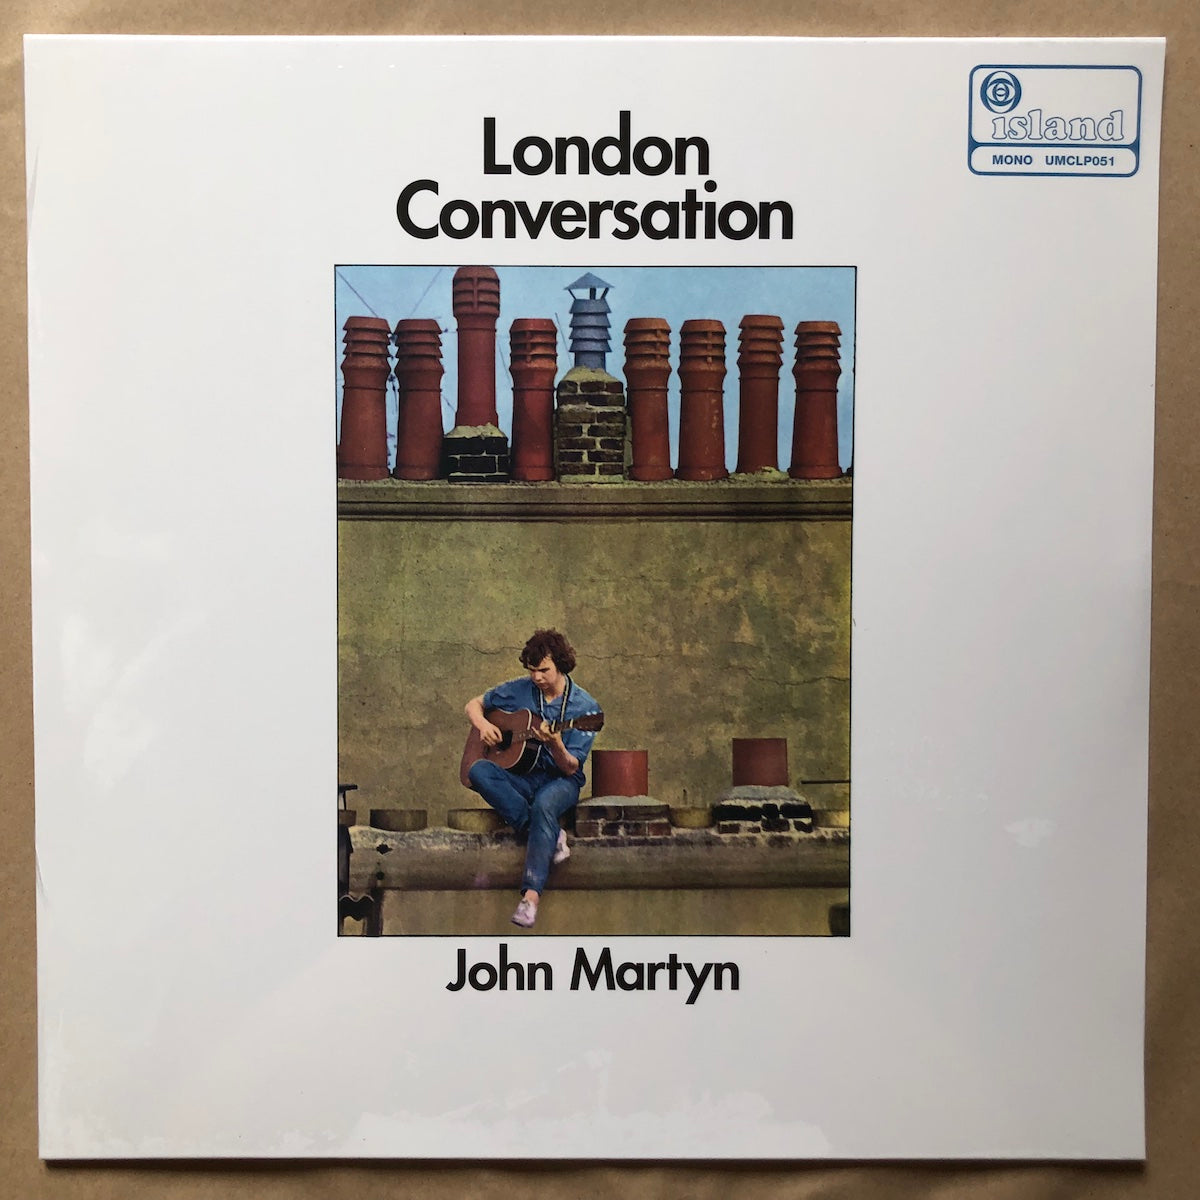 London Conversation: Vinyl LP